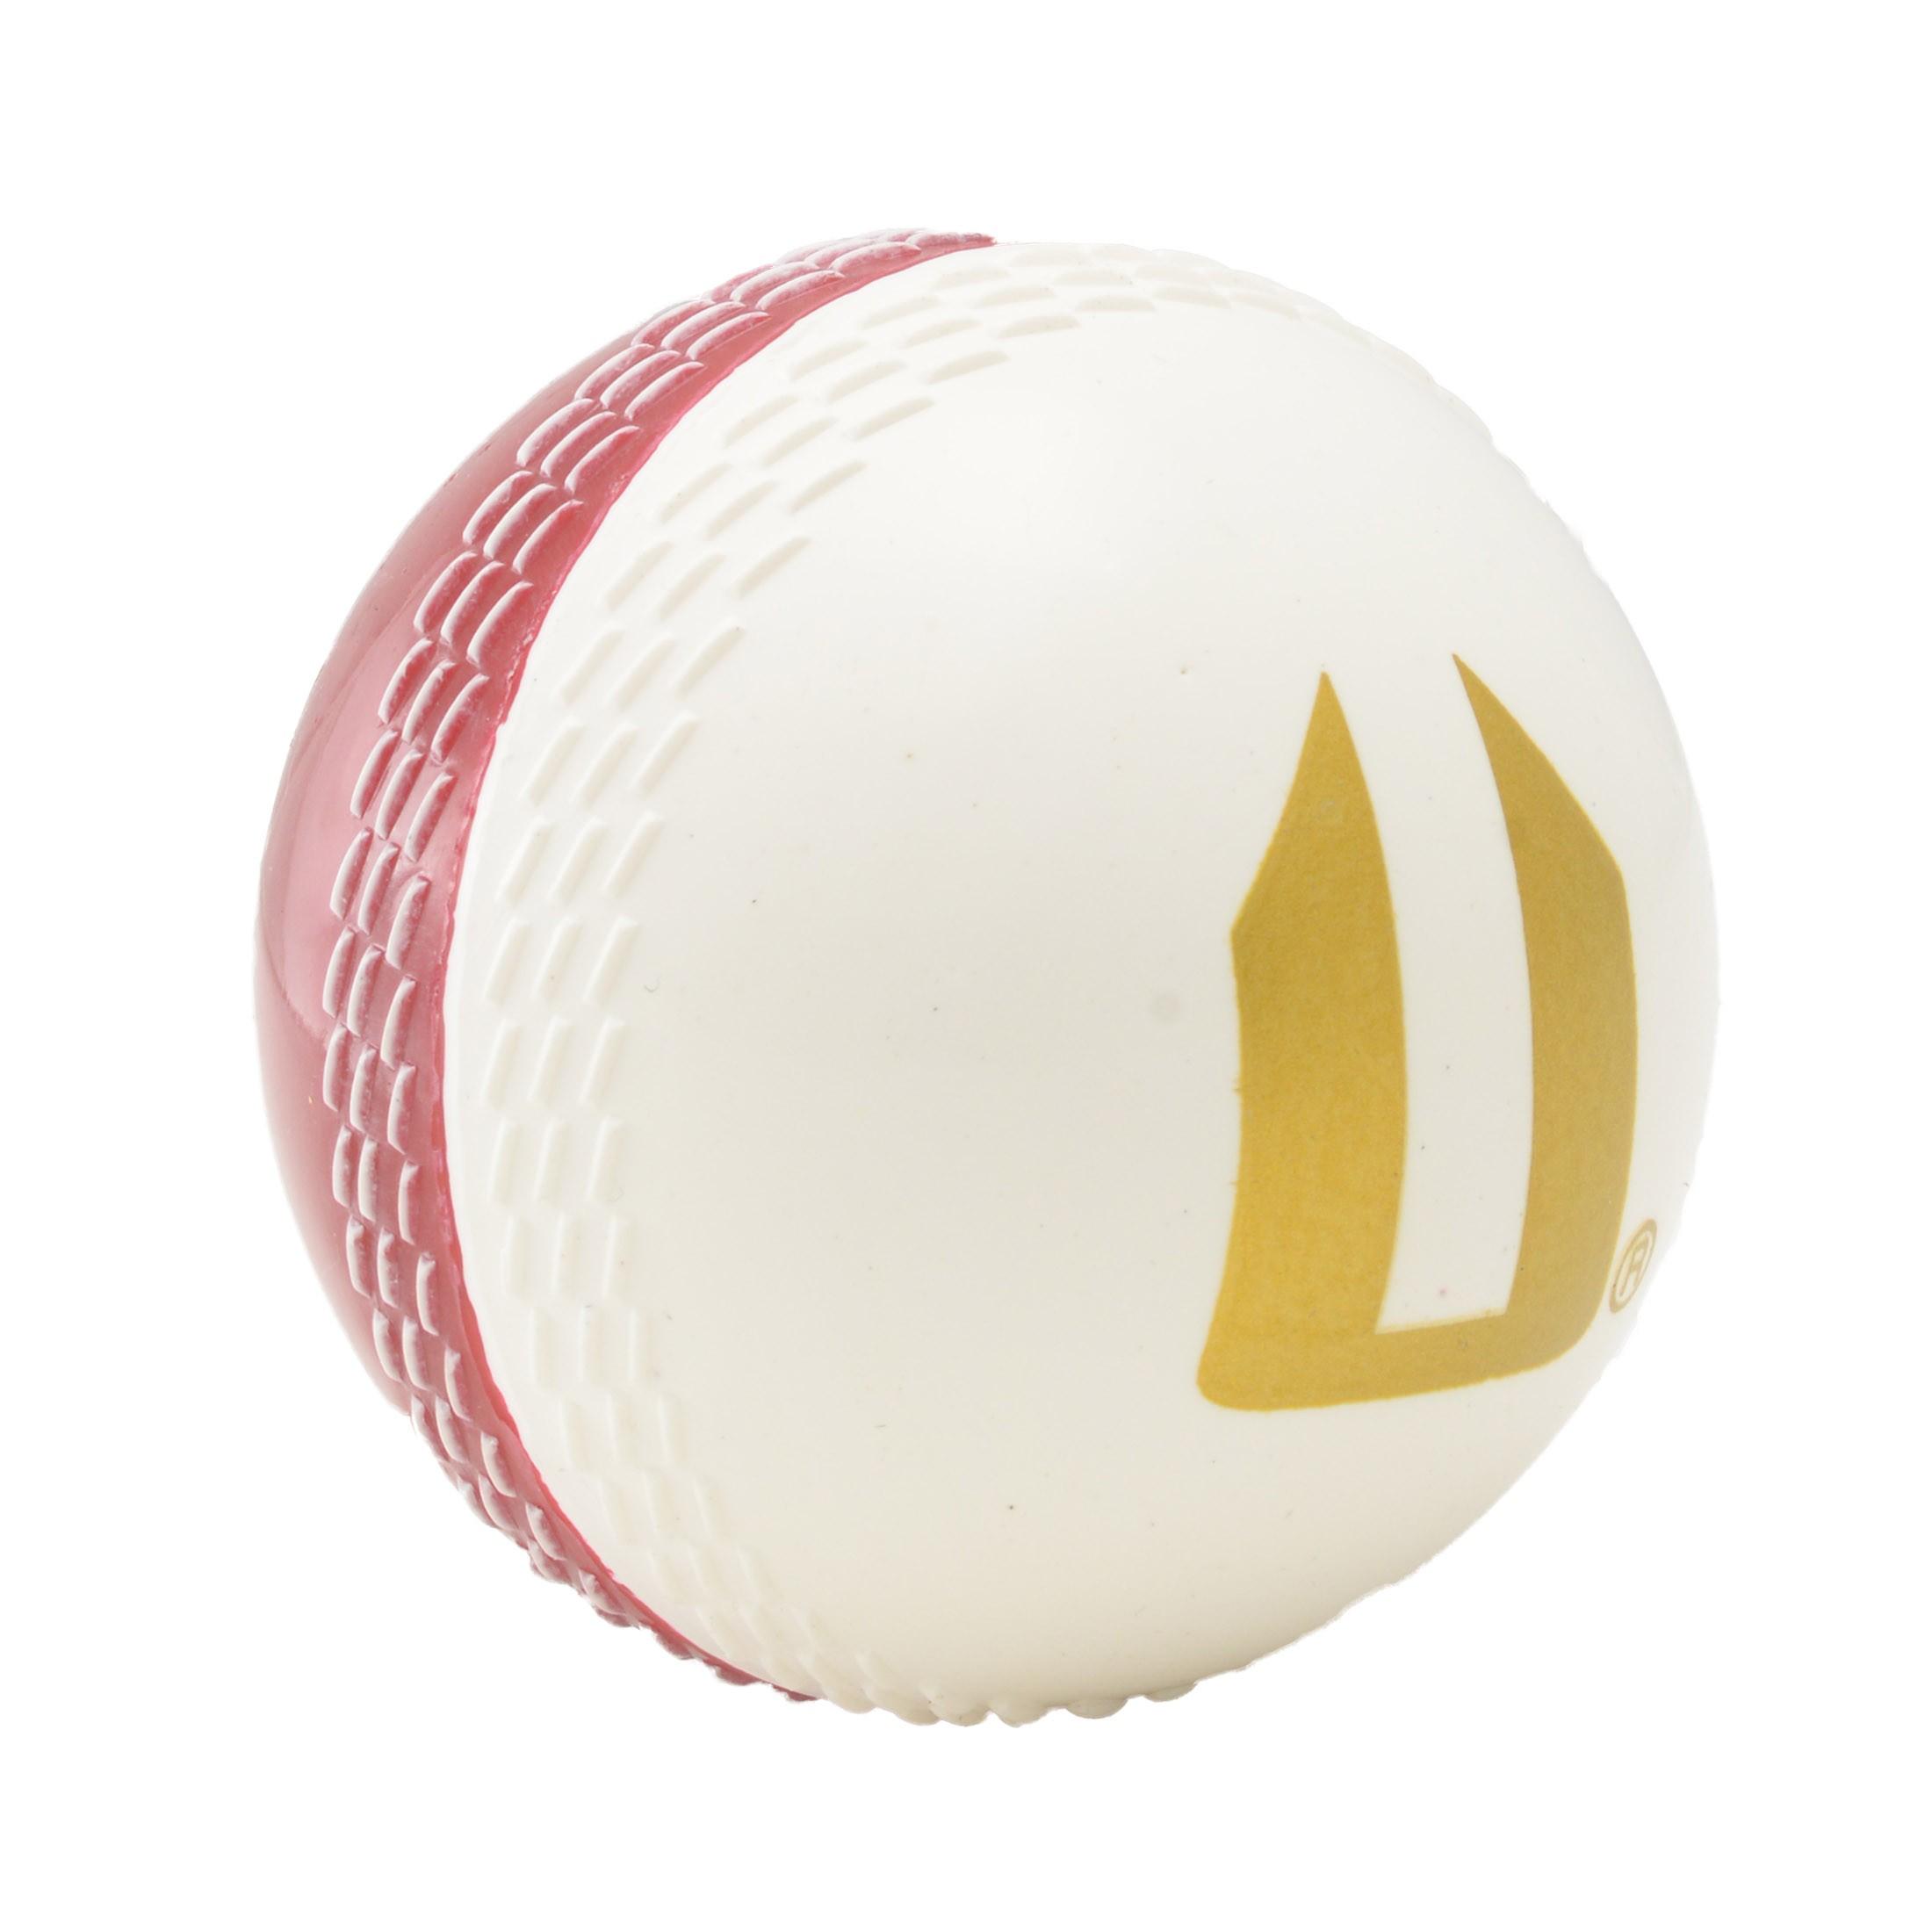 Red Sphere White X Logo - BULK BUY: Opttiuuq Magikk Ball PVC Cricket Training Ball – Red/White x 6